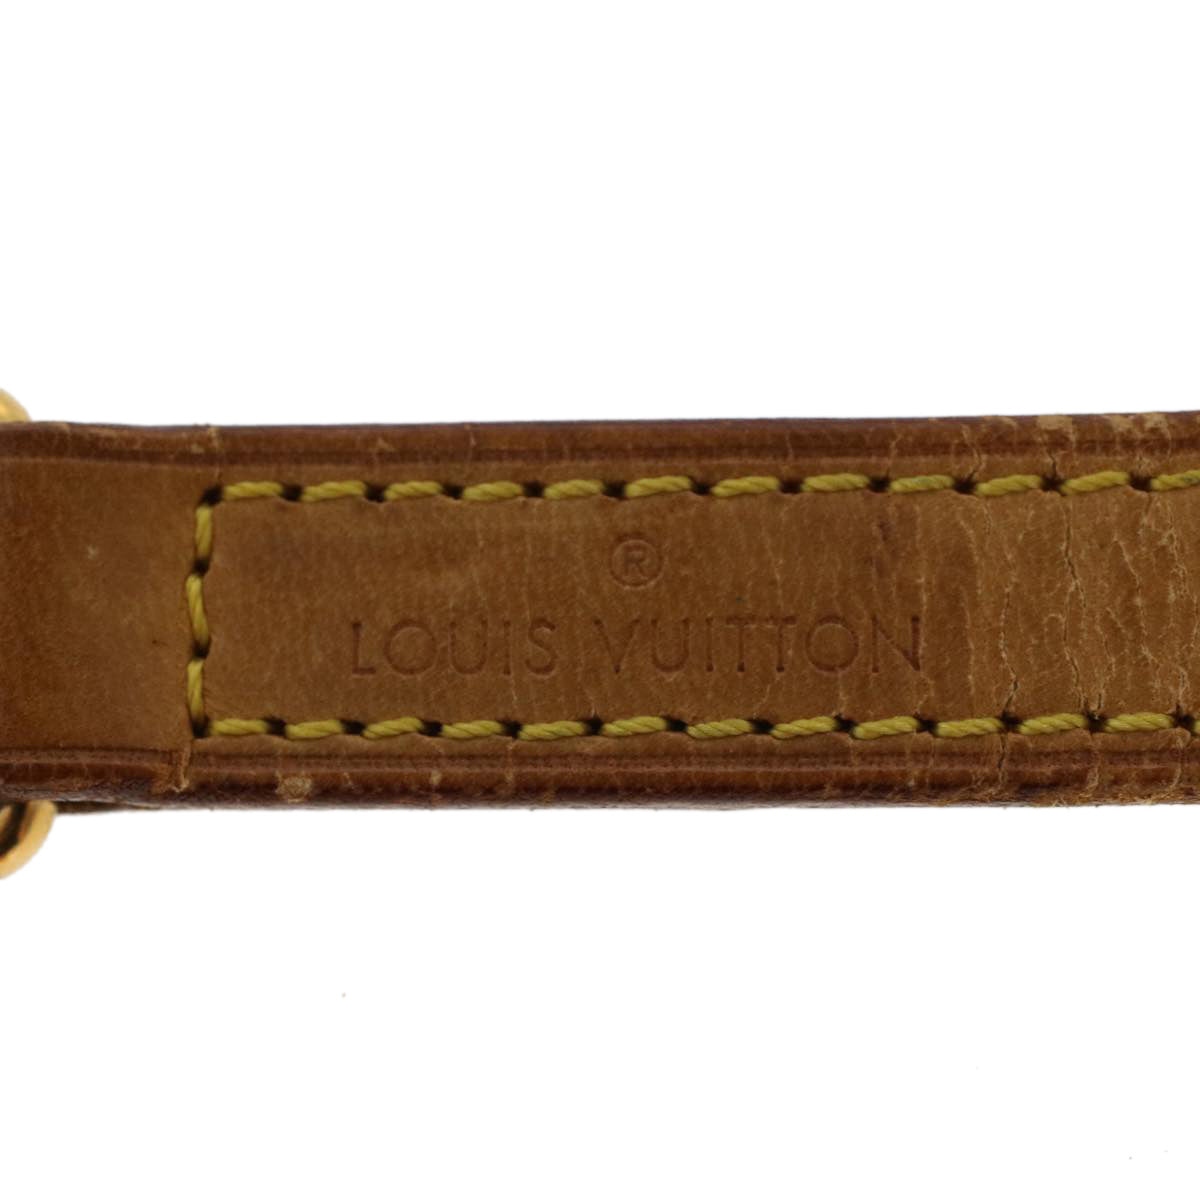 LOUIS VUITTON Shoulder Strap Leather 44.5"" Beige LV Auth 44024